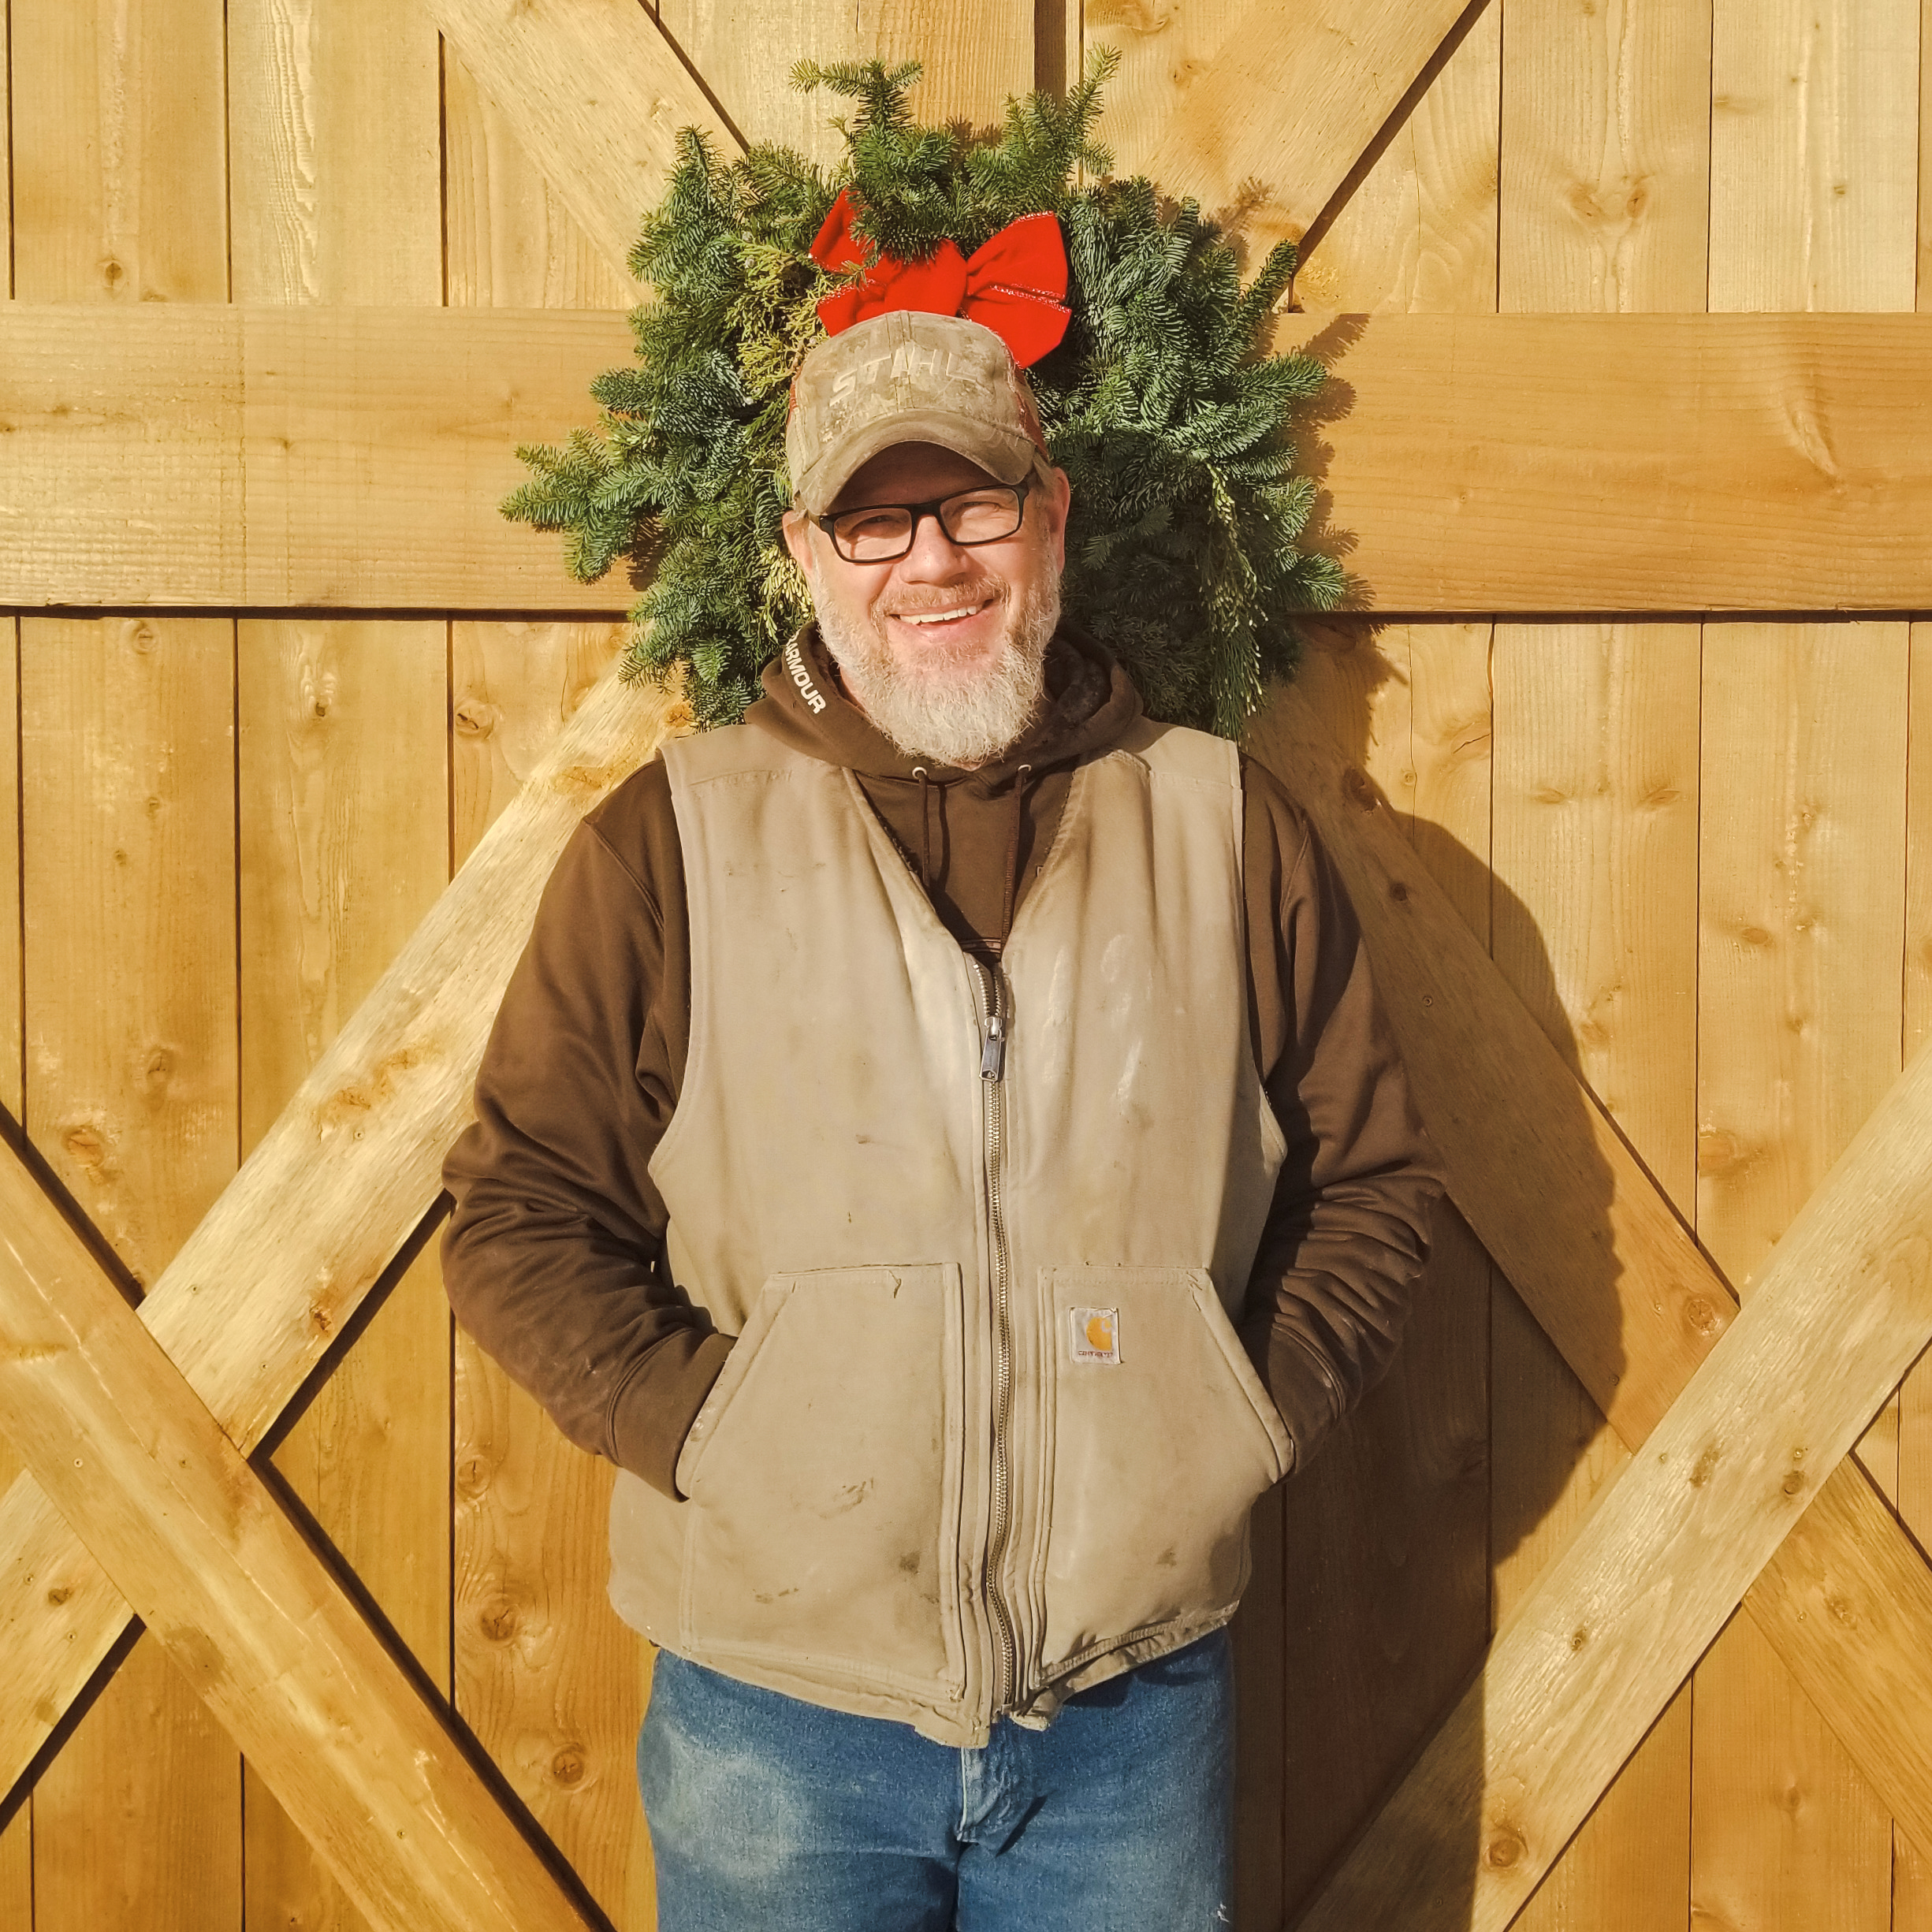 Steve feeling festive in front of Bluebird's Christmas Decor